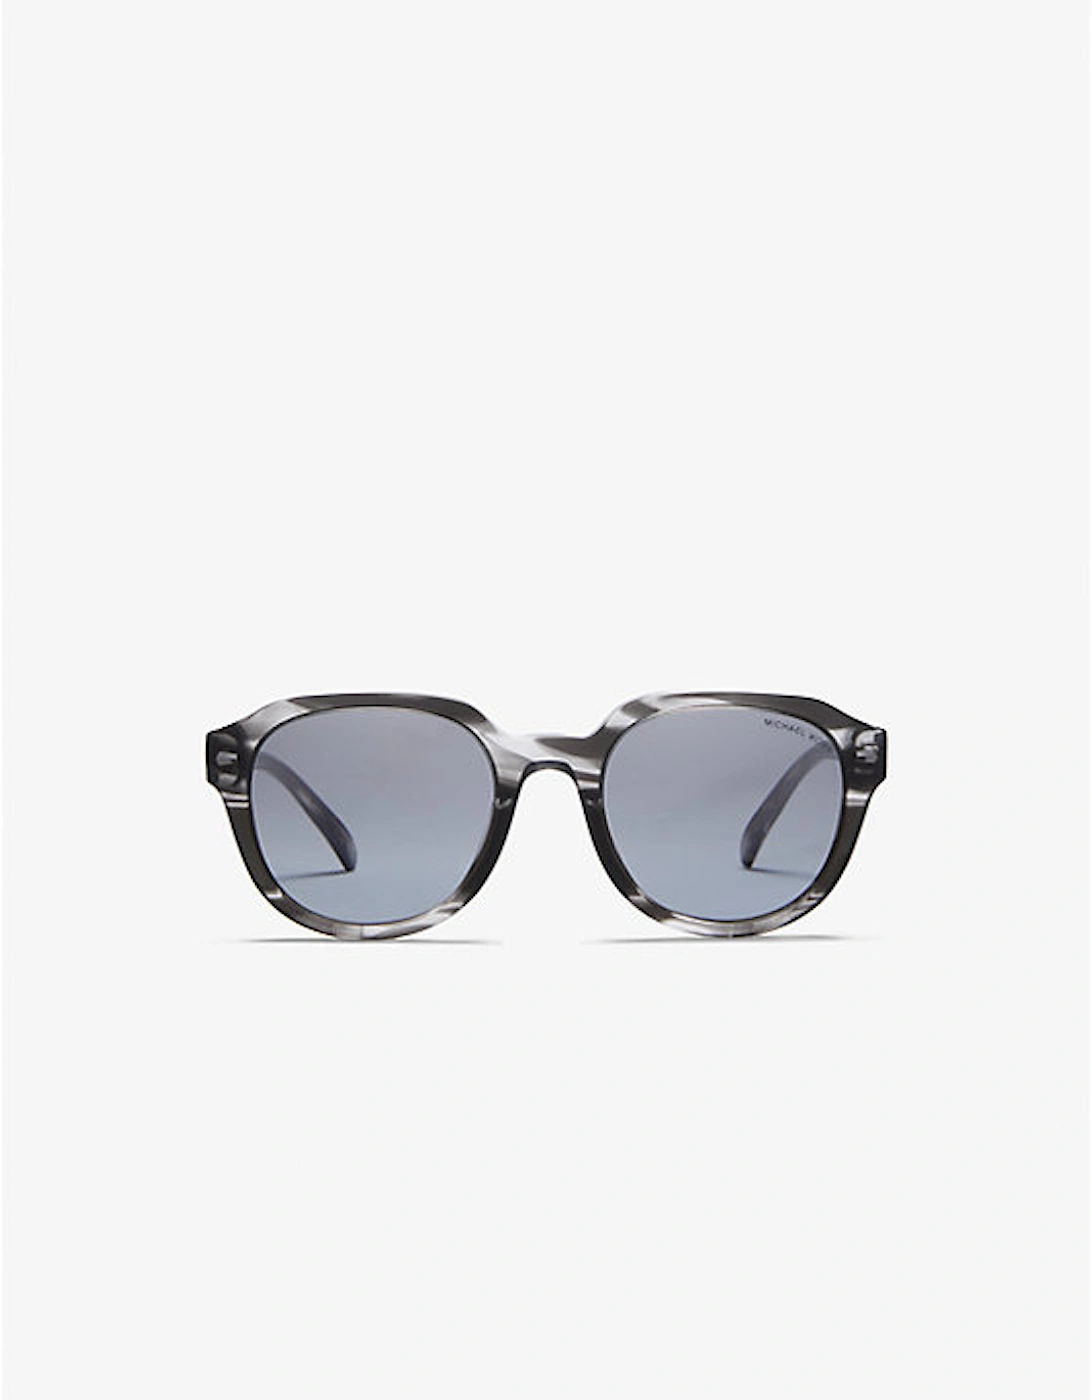 Eger Sunglasses, 2 of 1